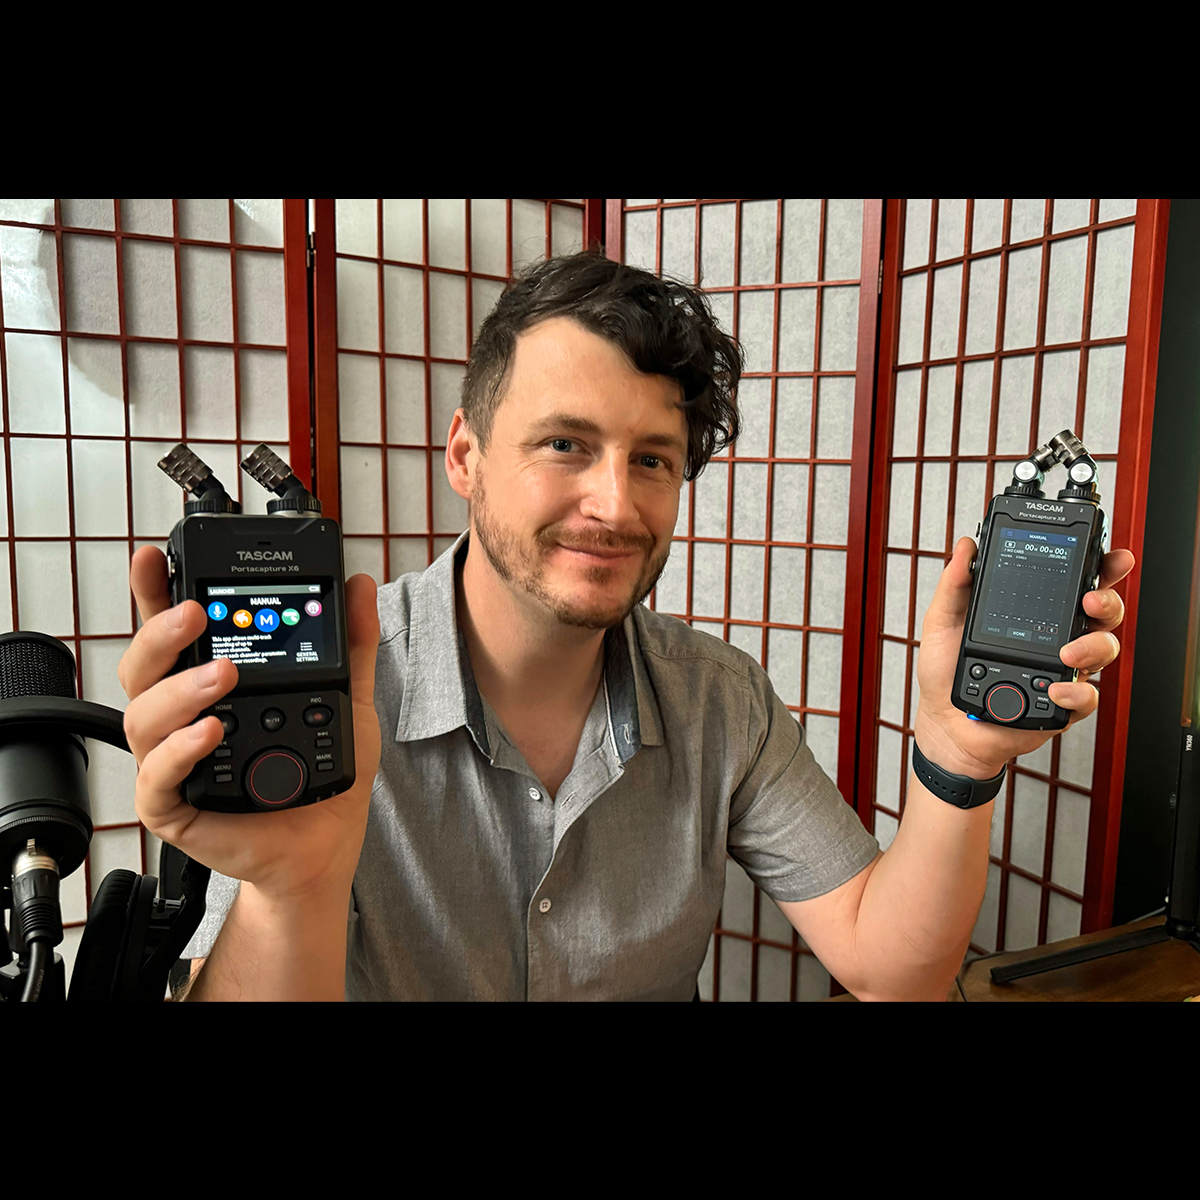 Las grabadoras portátiles TASCAM Portacapture X8 y X6  ayudan a Michael Fitzgerald a capturar sonido fácilmente